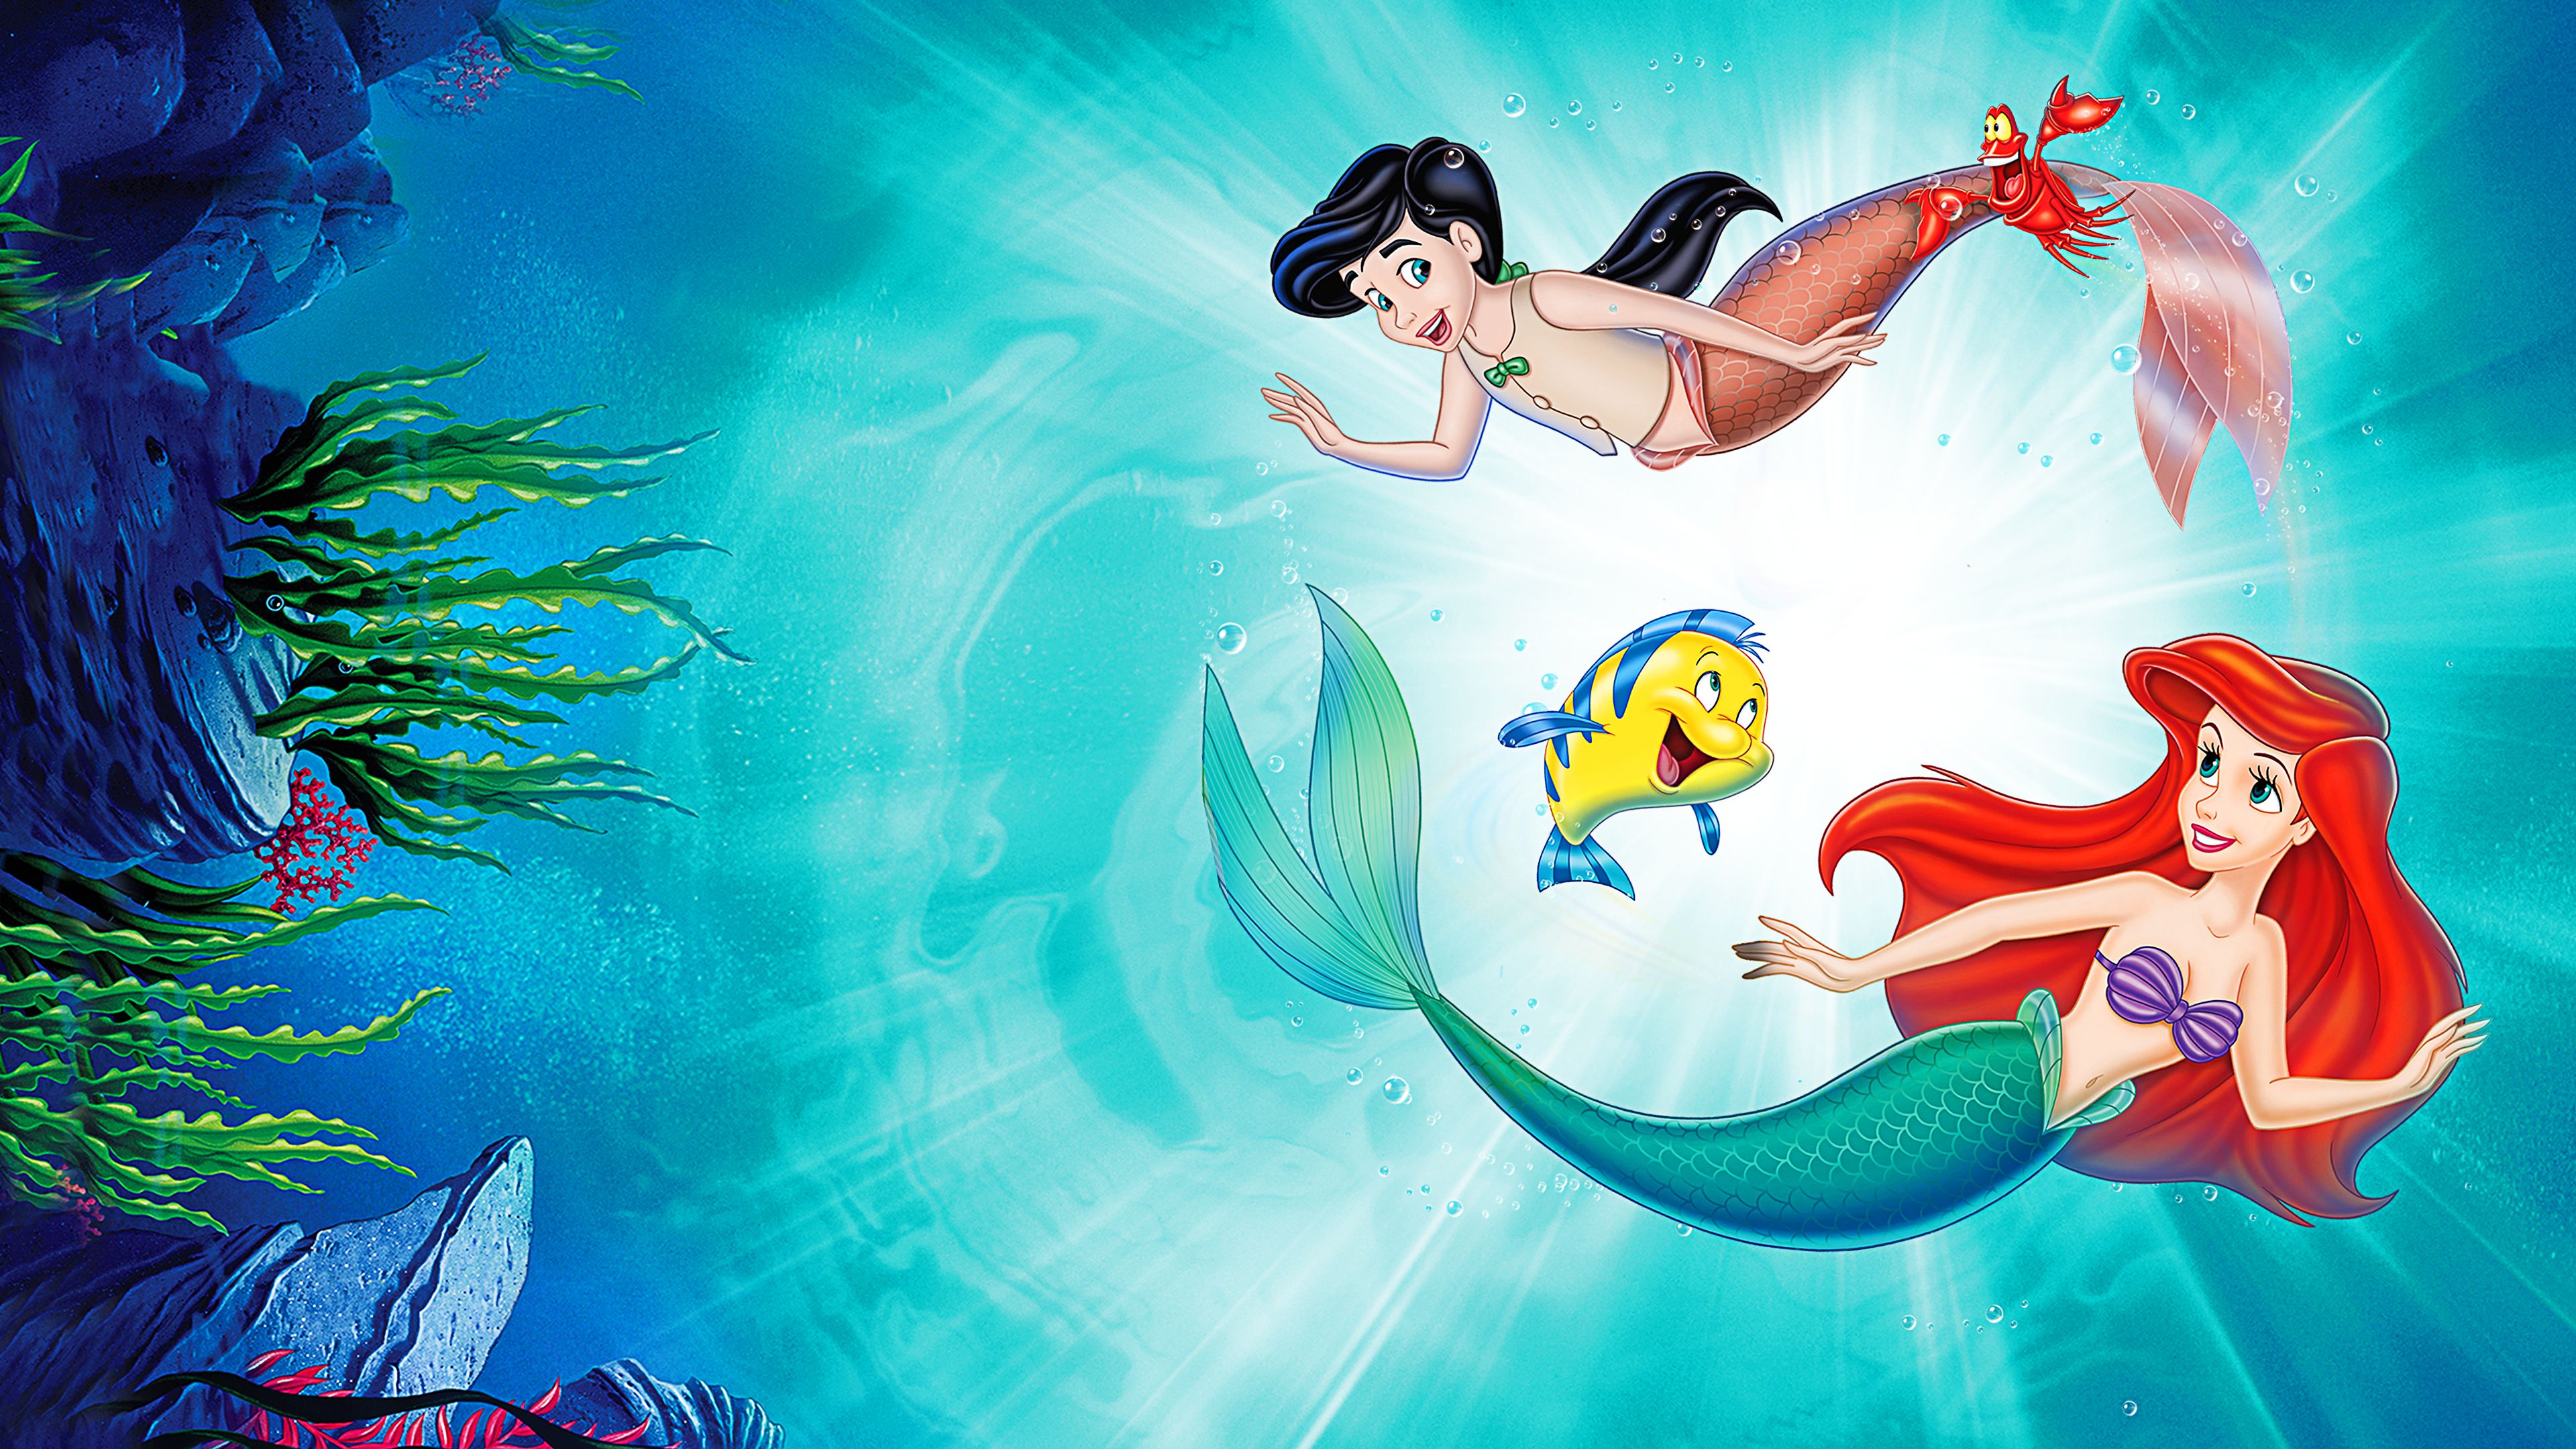 Melody Ariel The Little Mermaid 4k Ultra HD Wallpaper 3840x2160